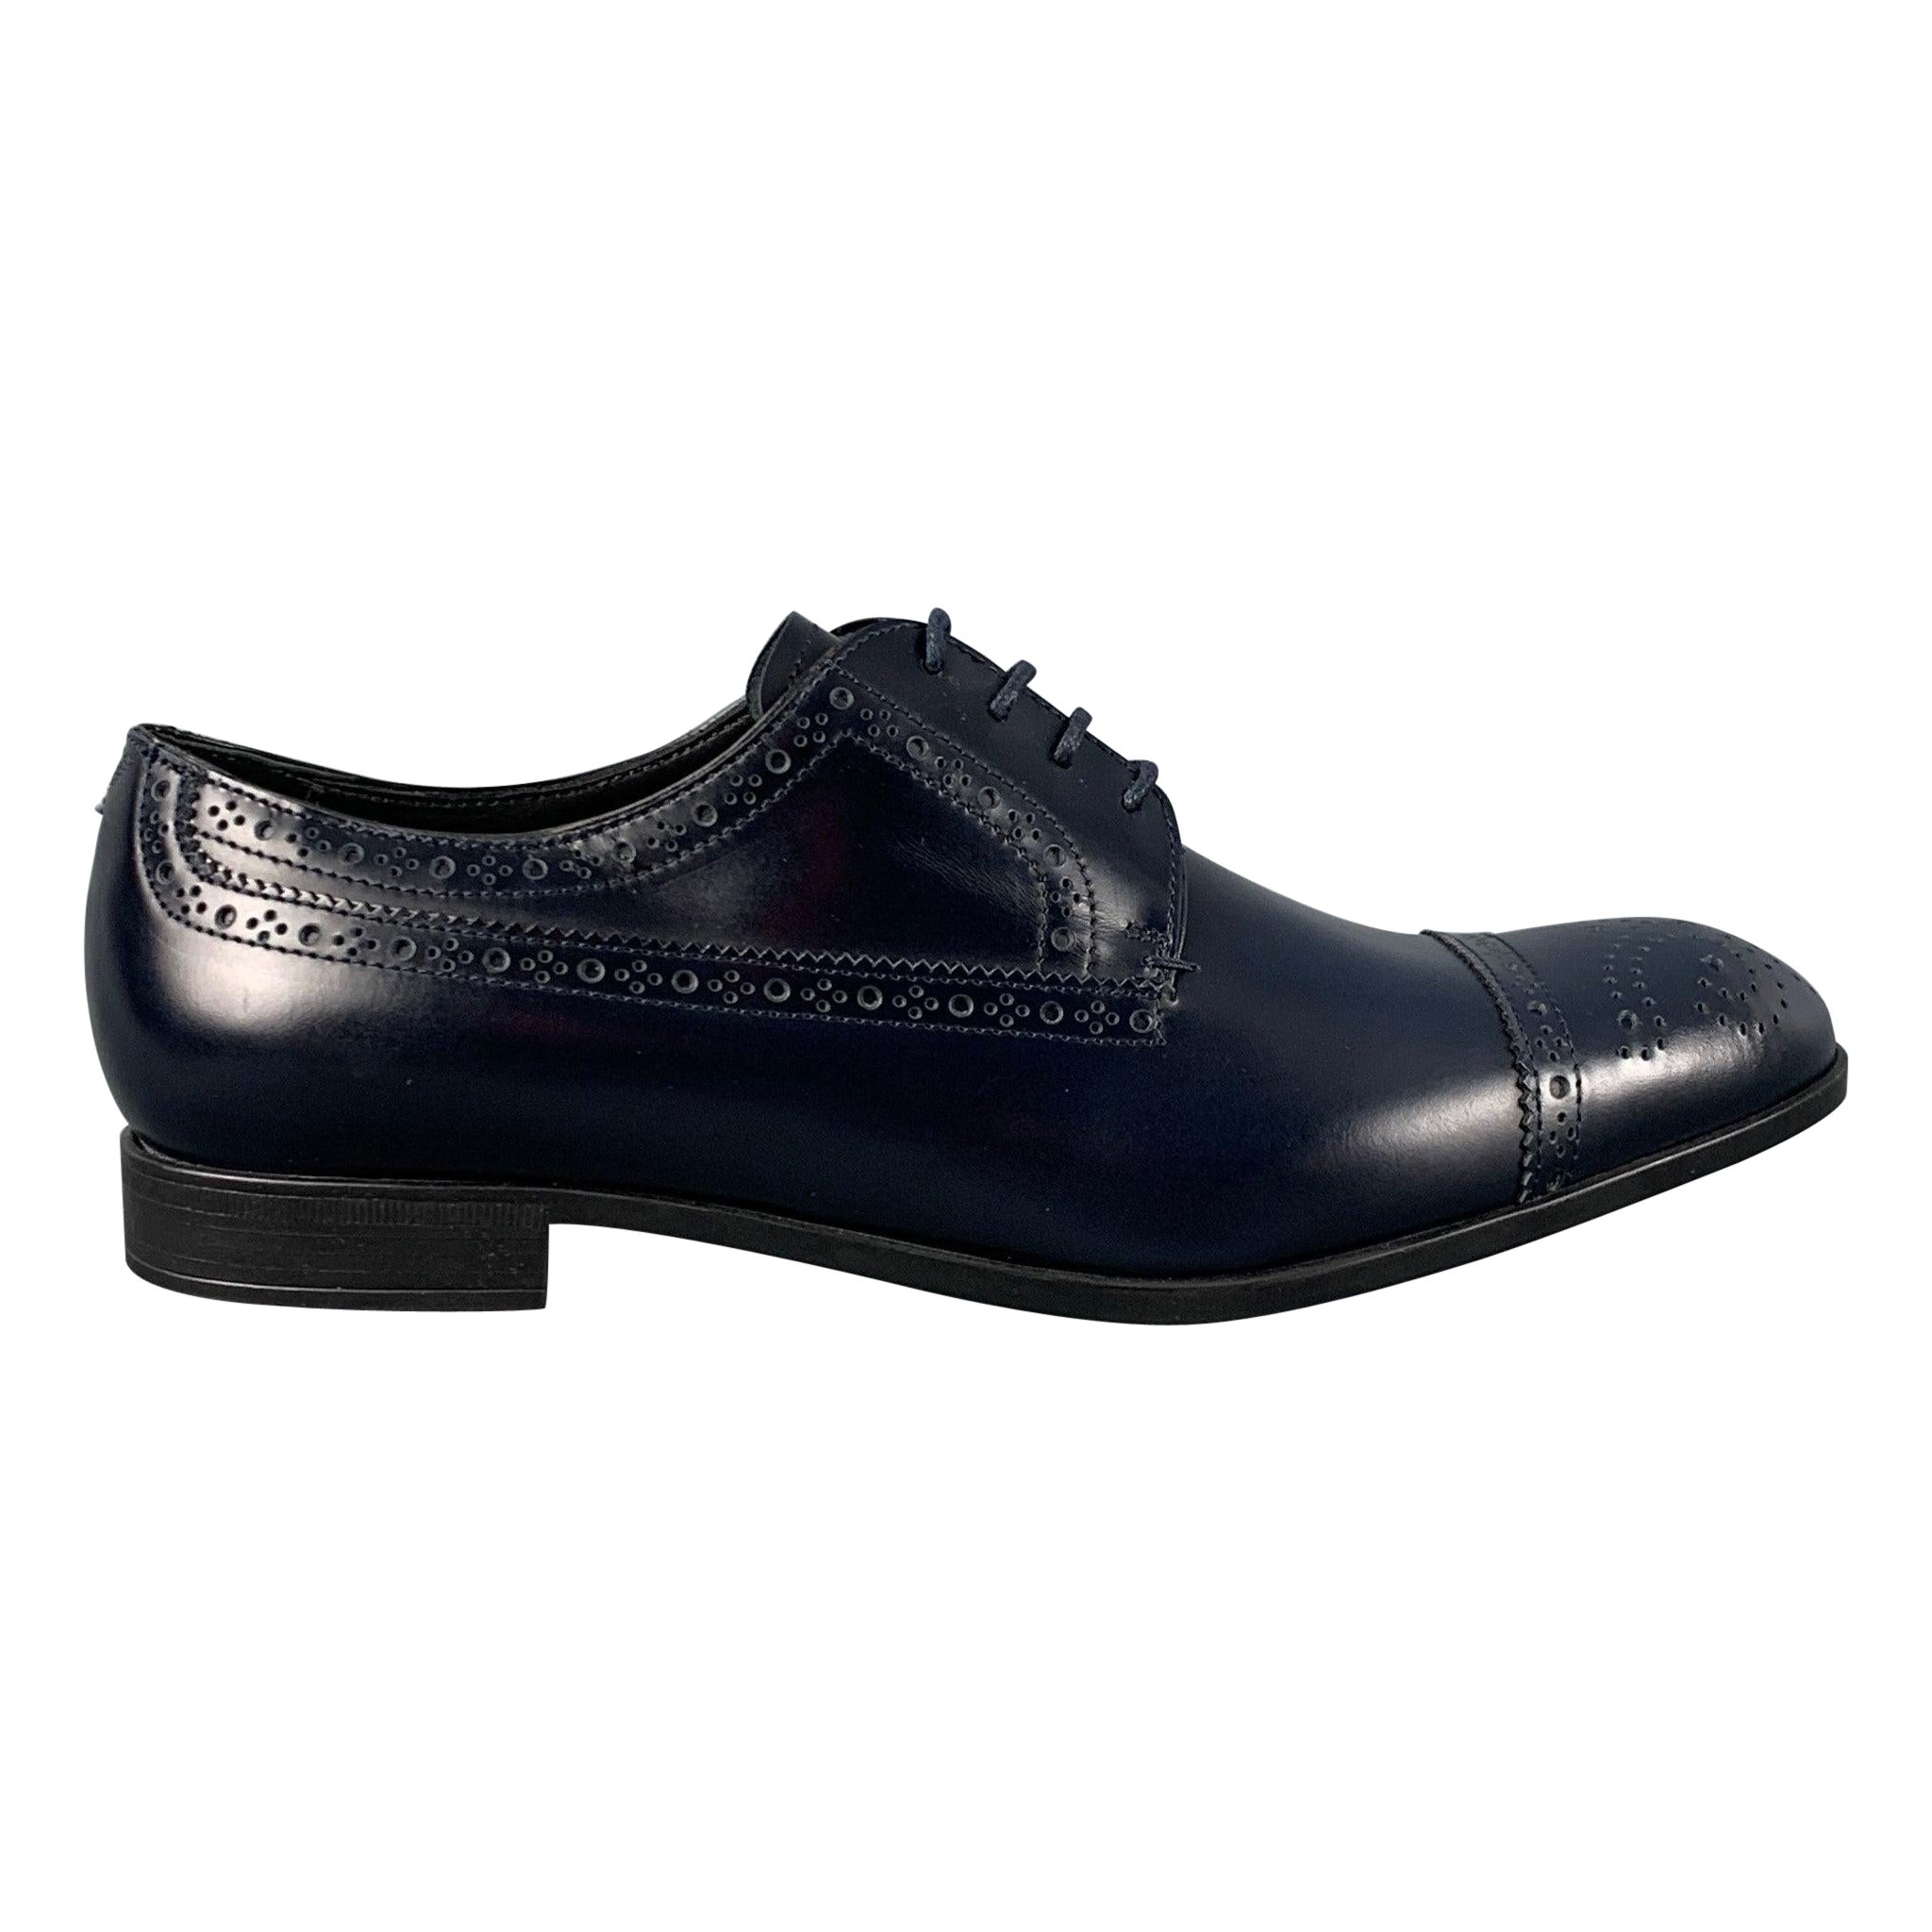 EMPORIO ARMANI - Chaussures à lacets en cuir perforé bleu marine, taille 9